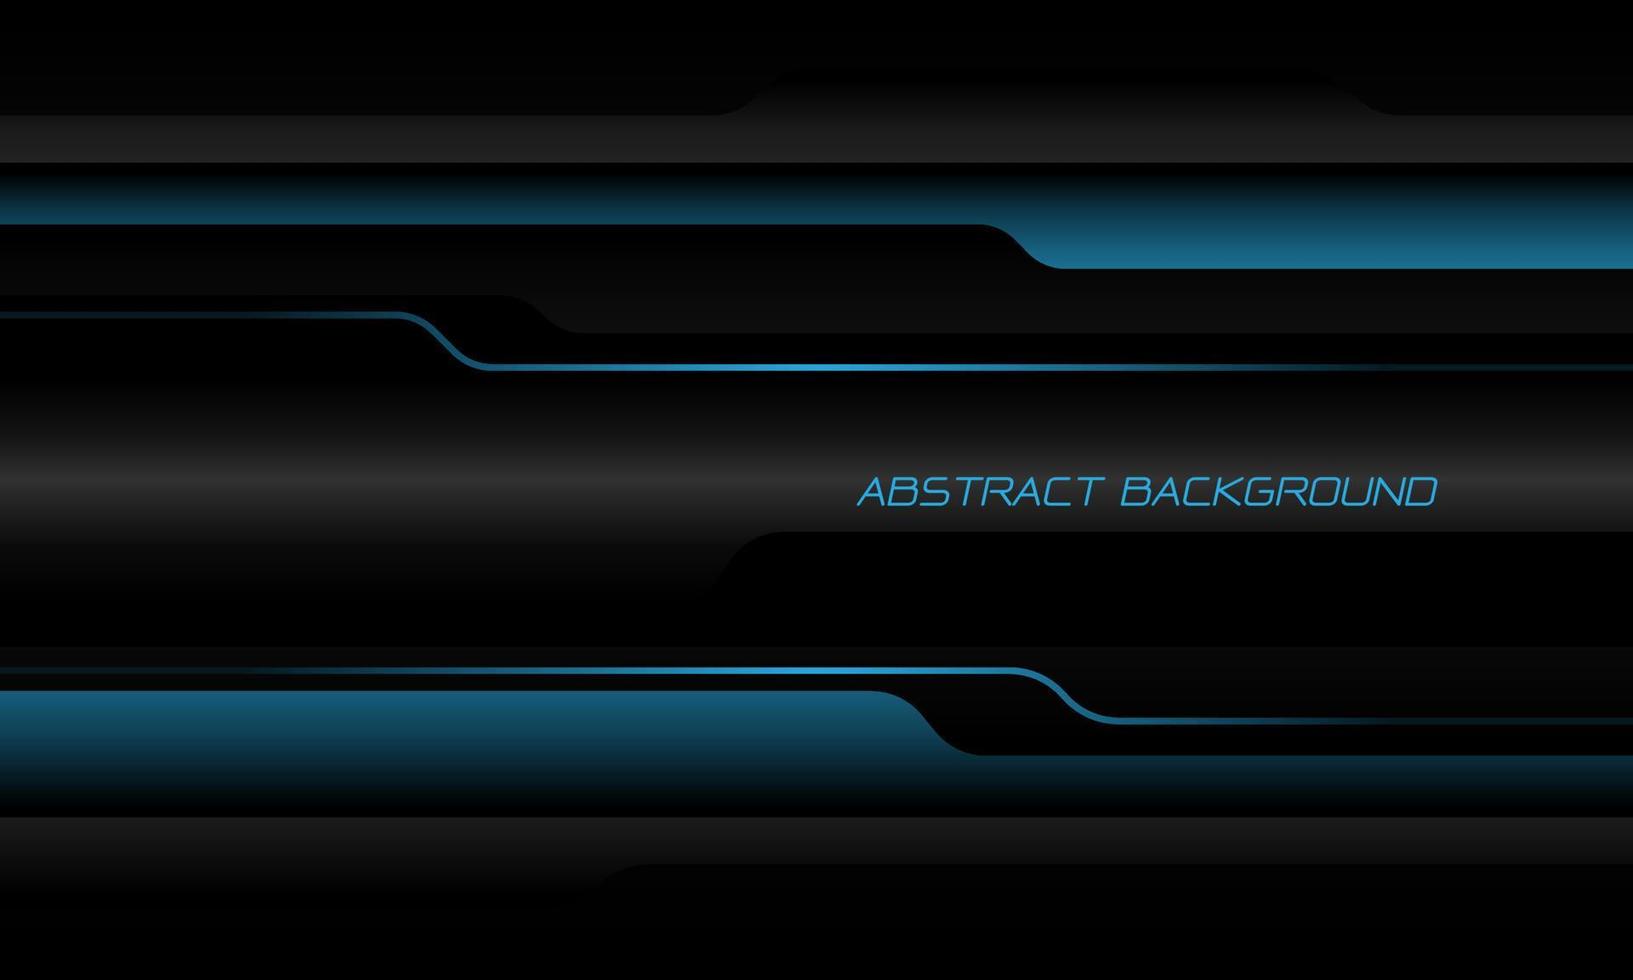 abstrait bleu gris noir métallique chevauchement cyber ombre conception géométrique luxe moderne technologie futuriste fond vecteur